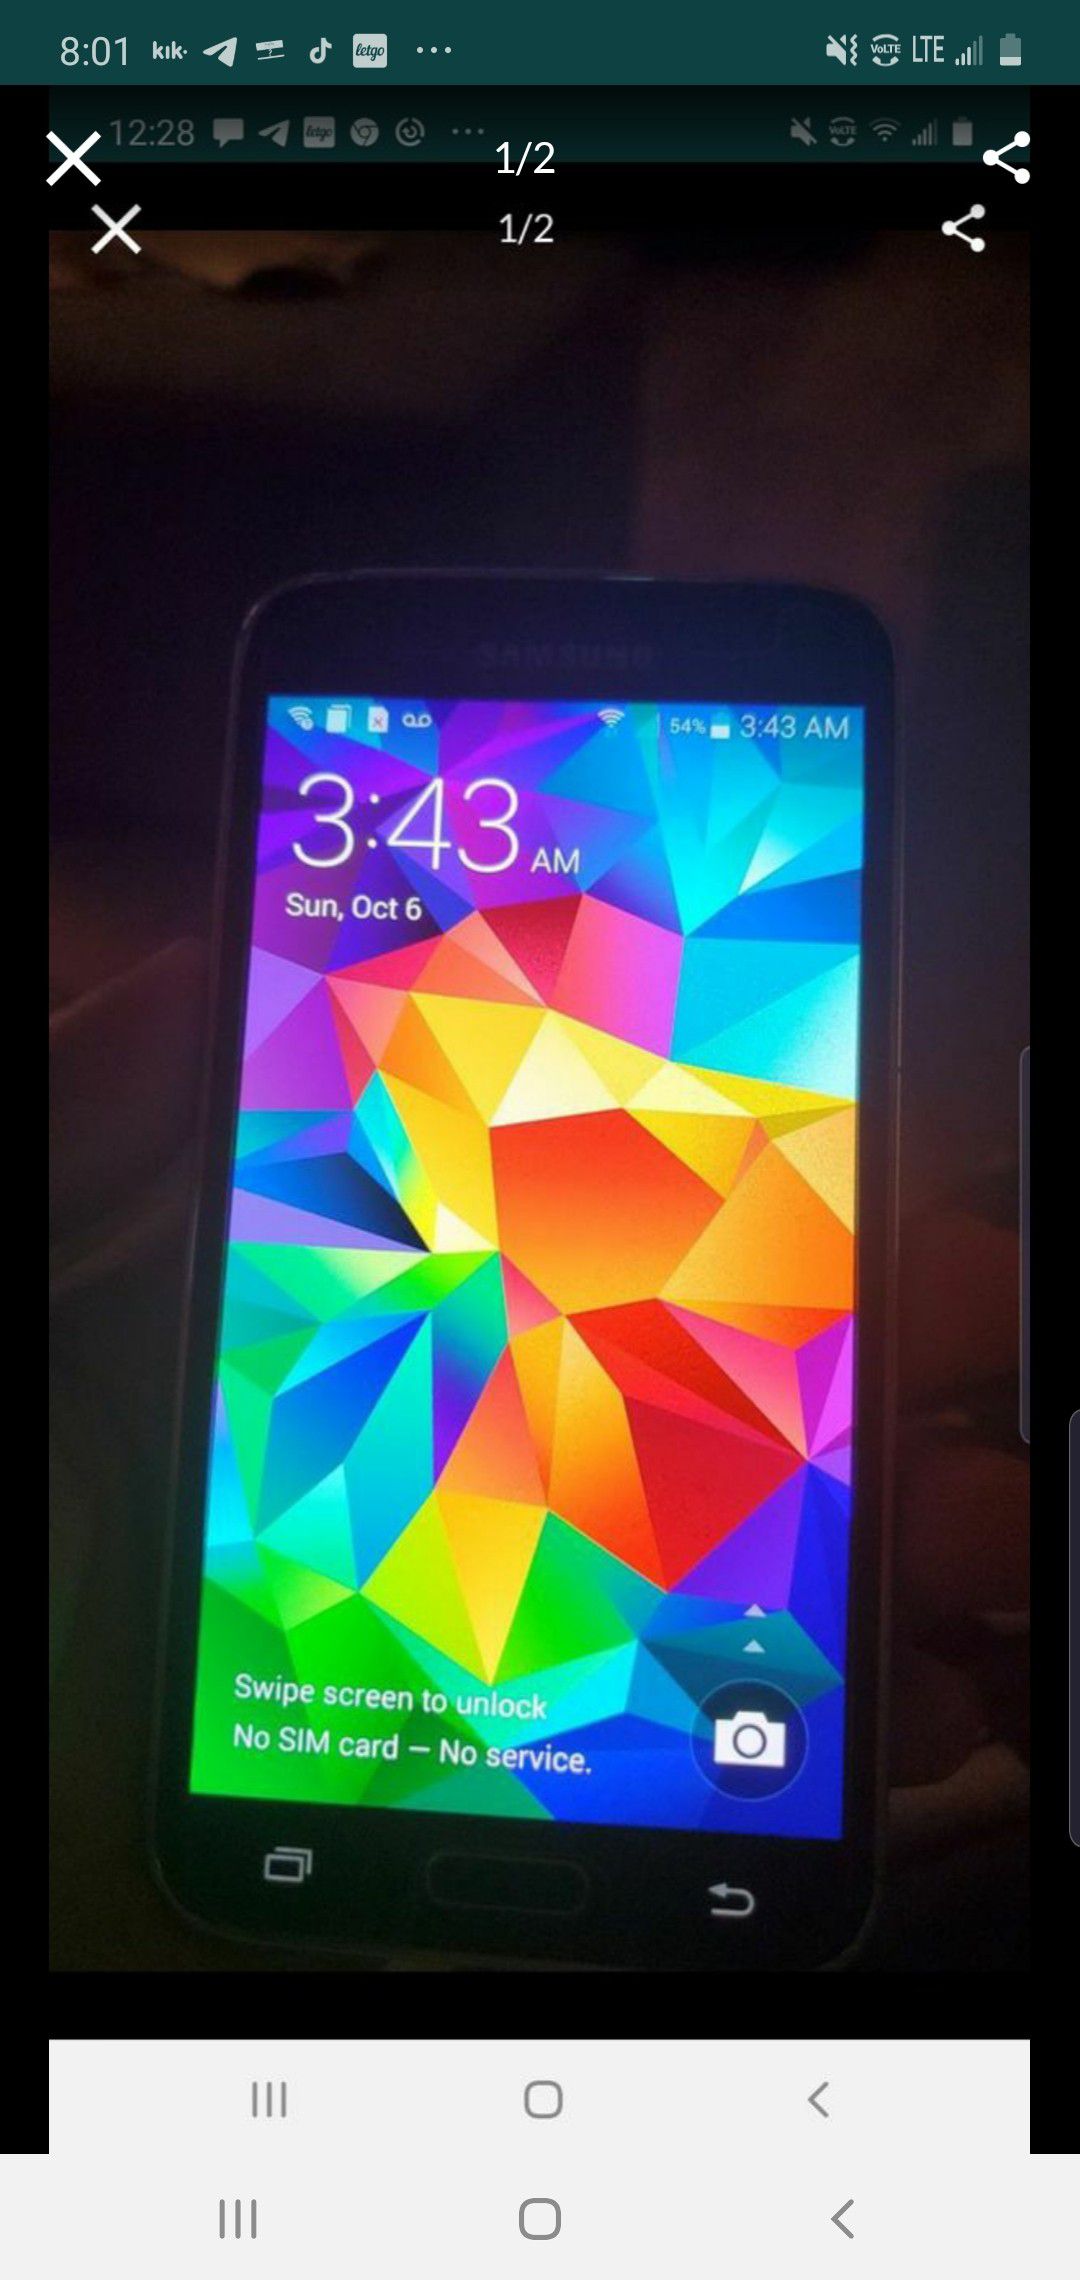 Samsung Galaxy S5 unlocked